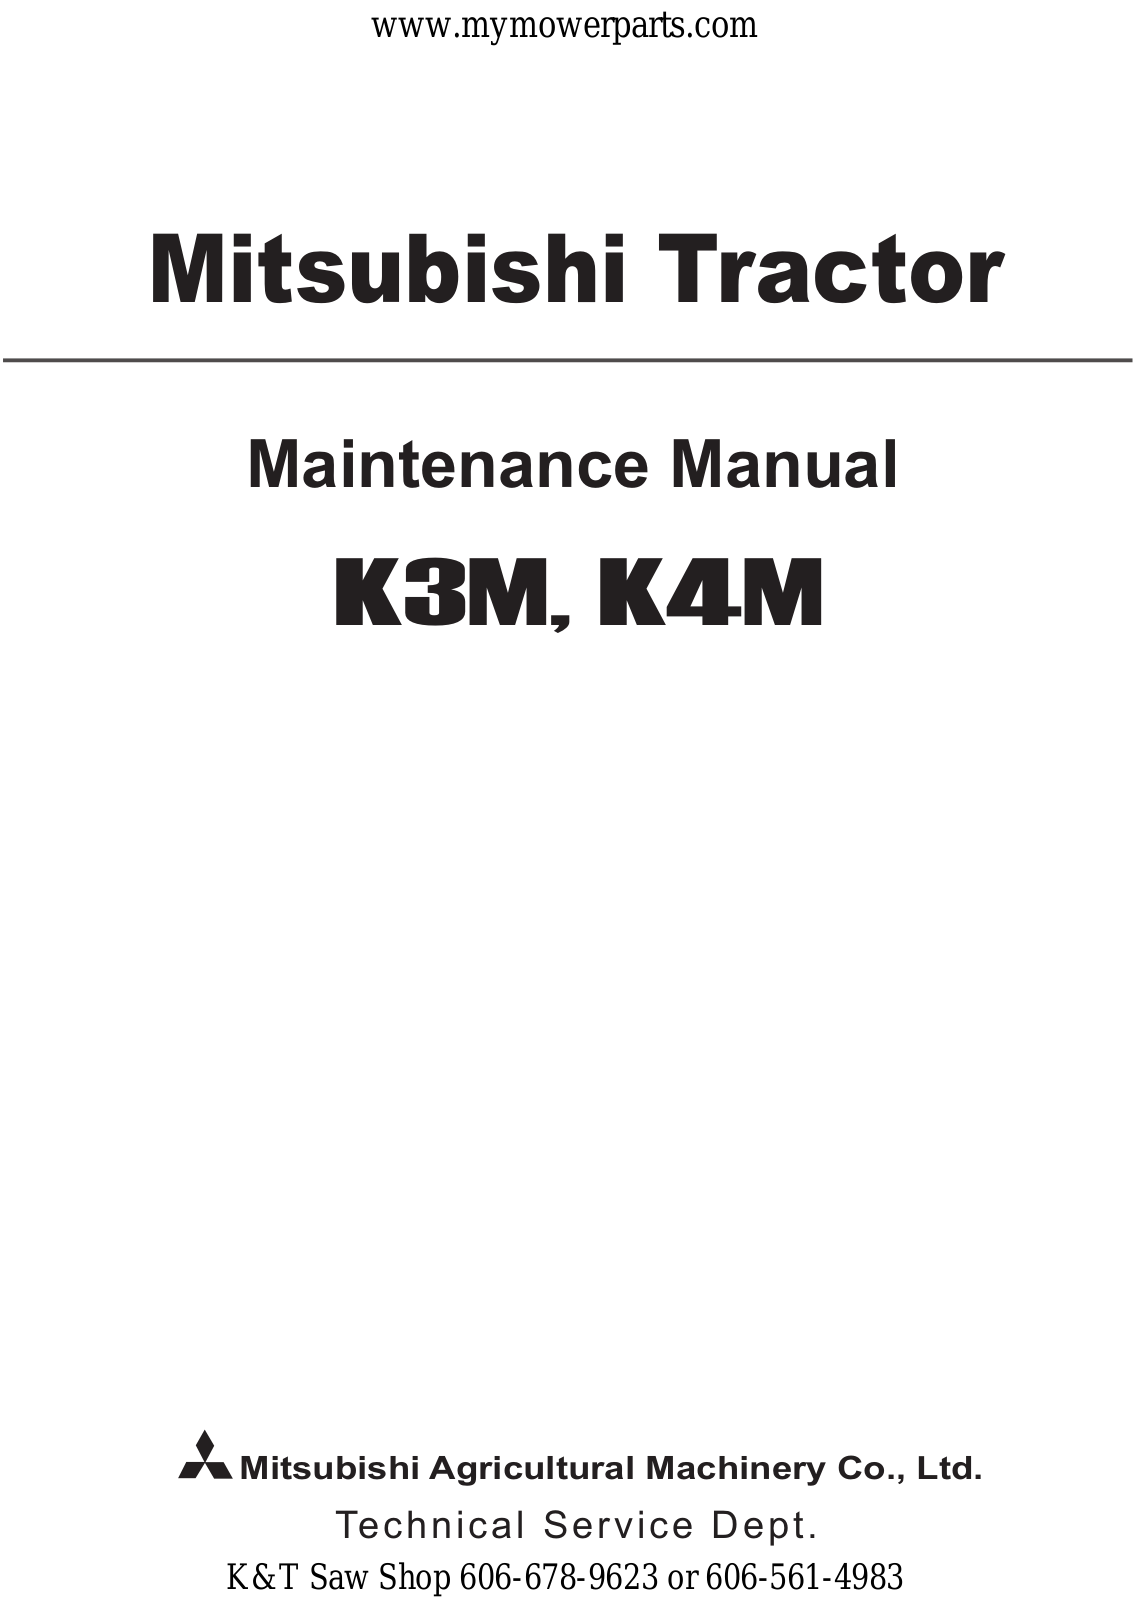 Mitsubishi K4M, K3M Maintenance Manual